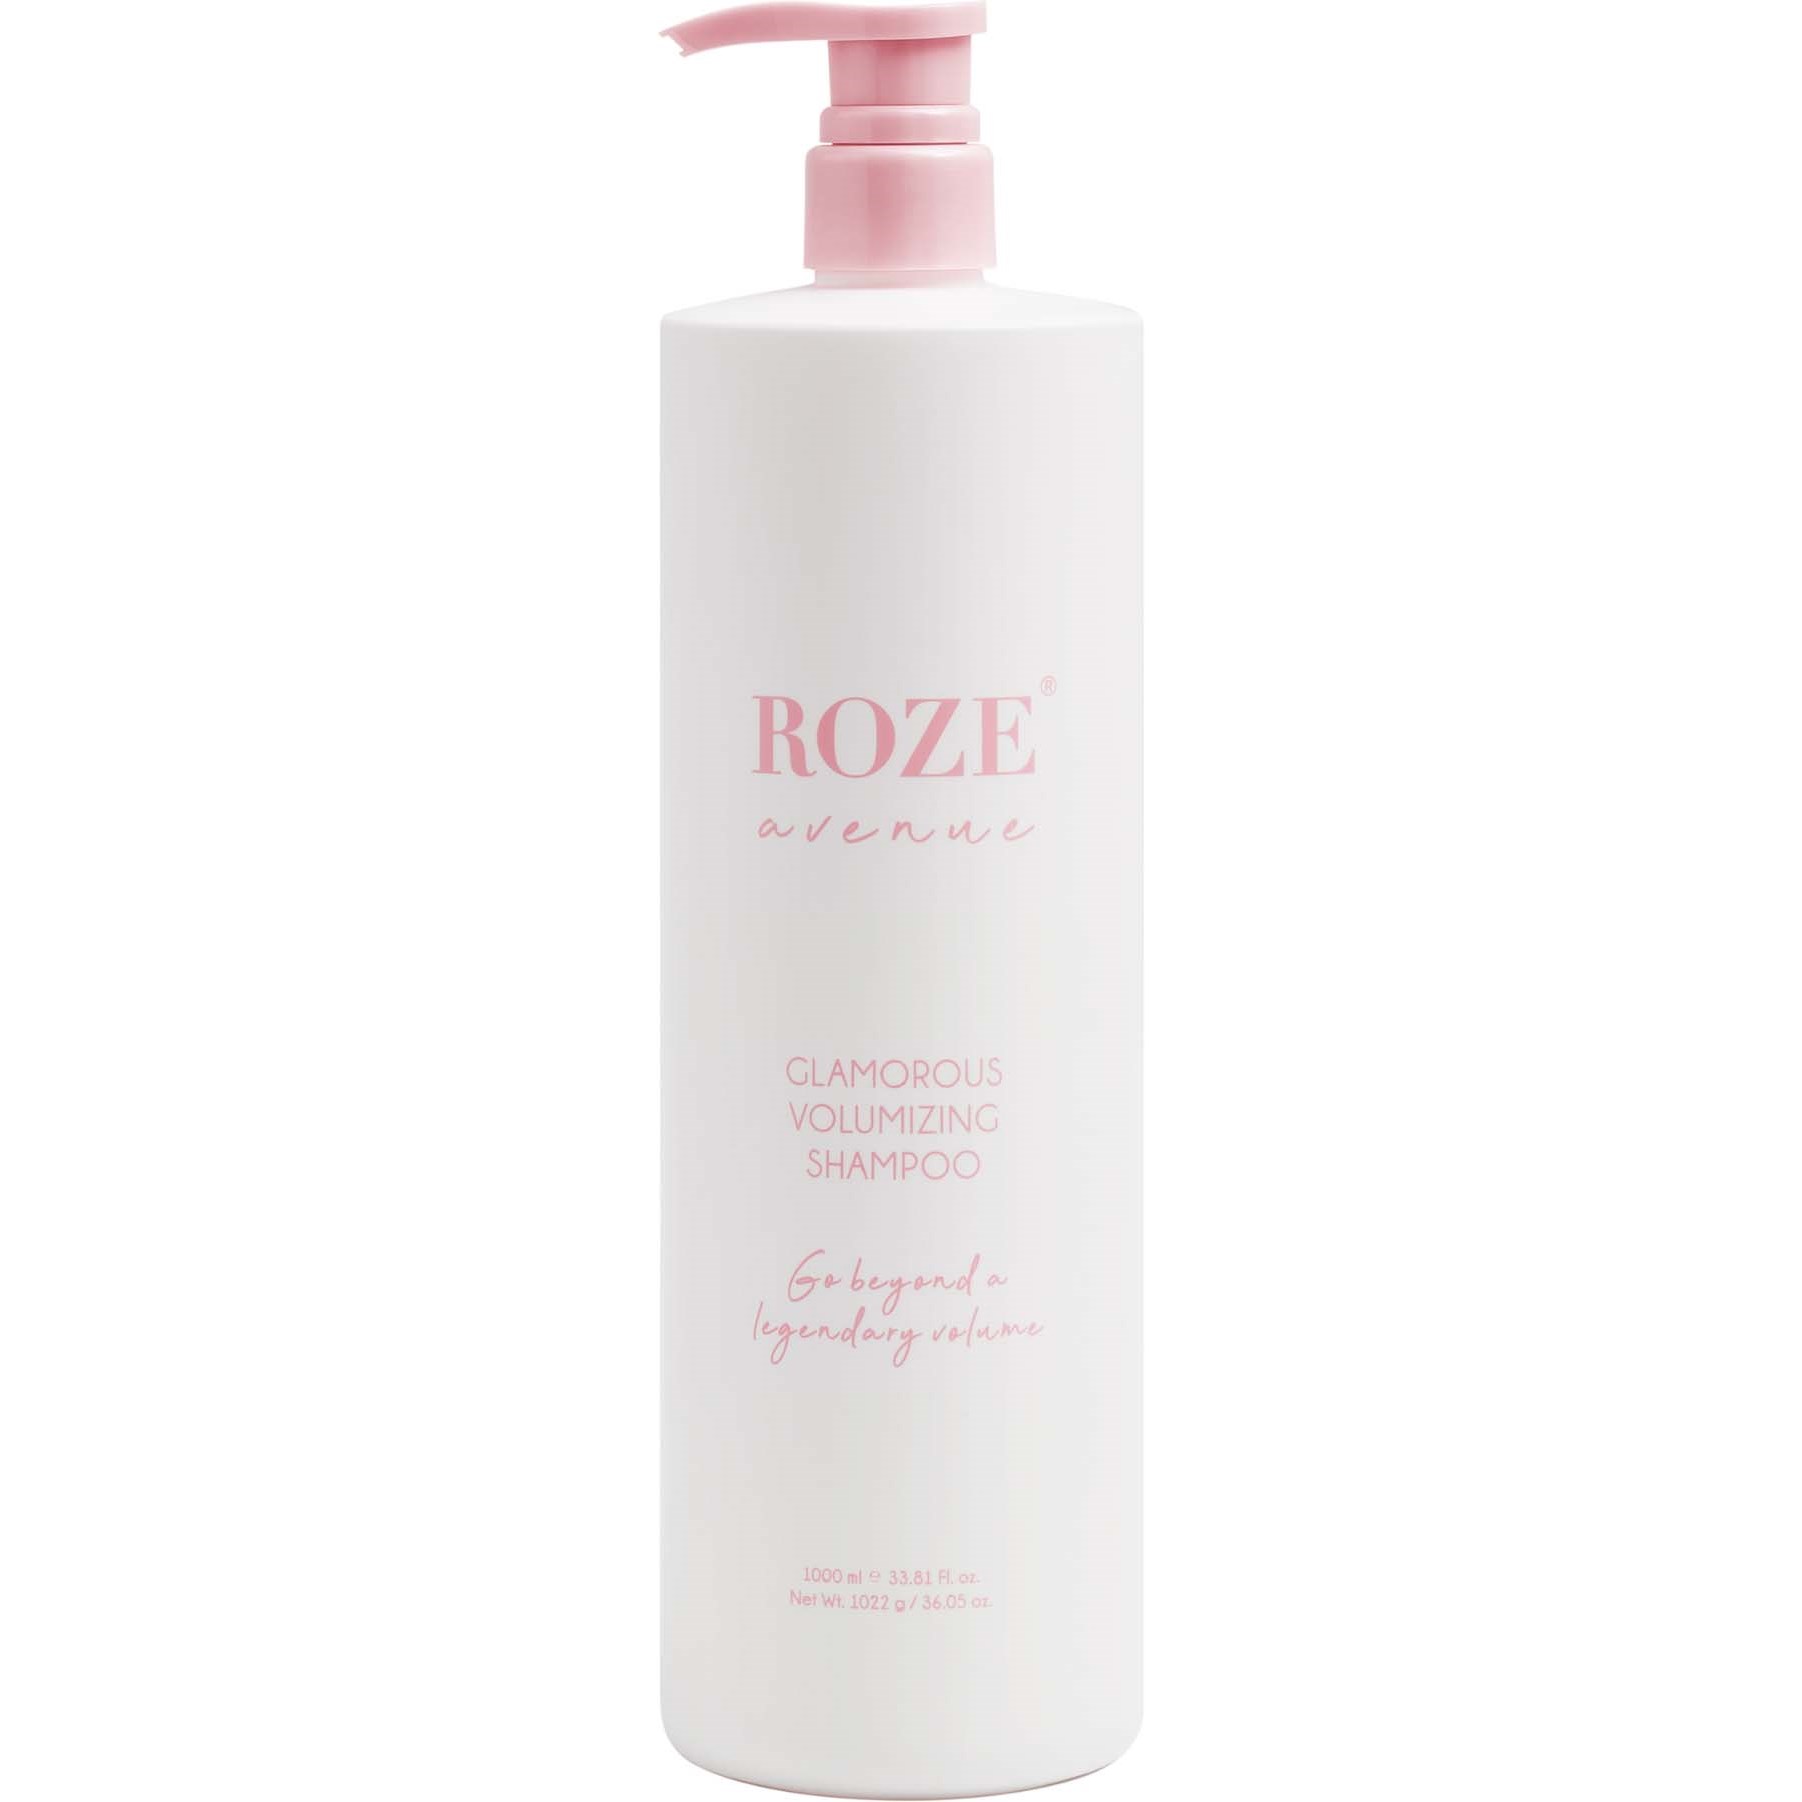 Roze Avenue Glamorous Volumizing Shampoo 1000 ml